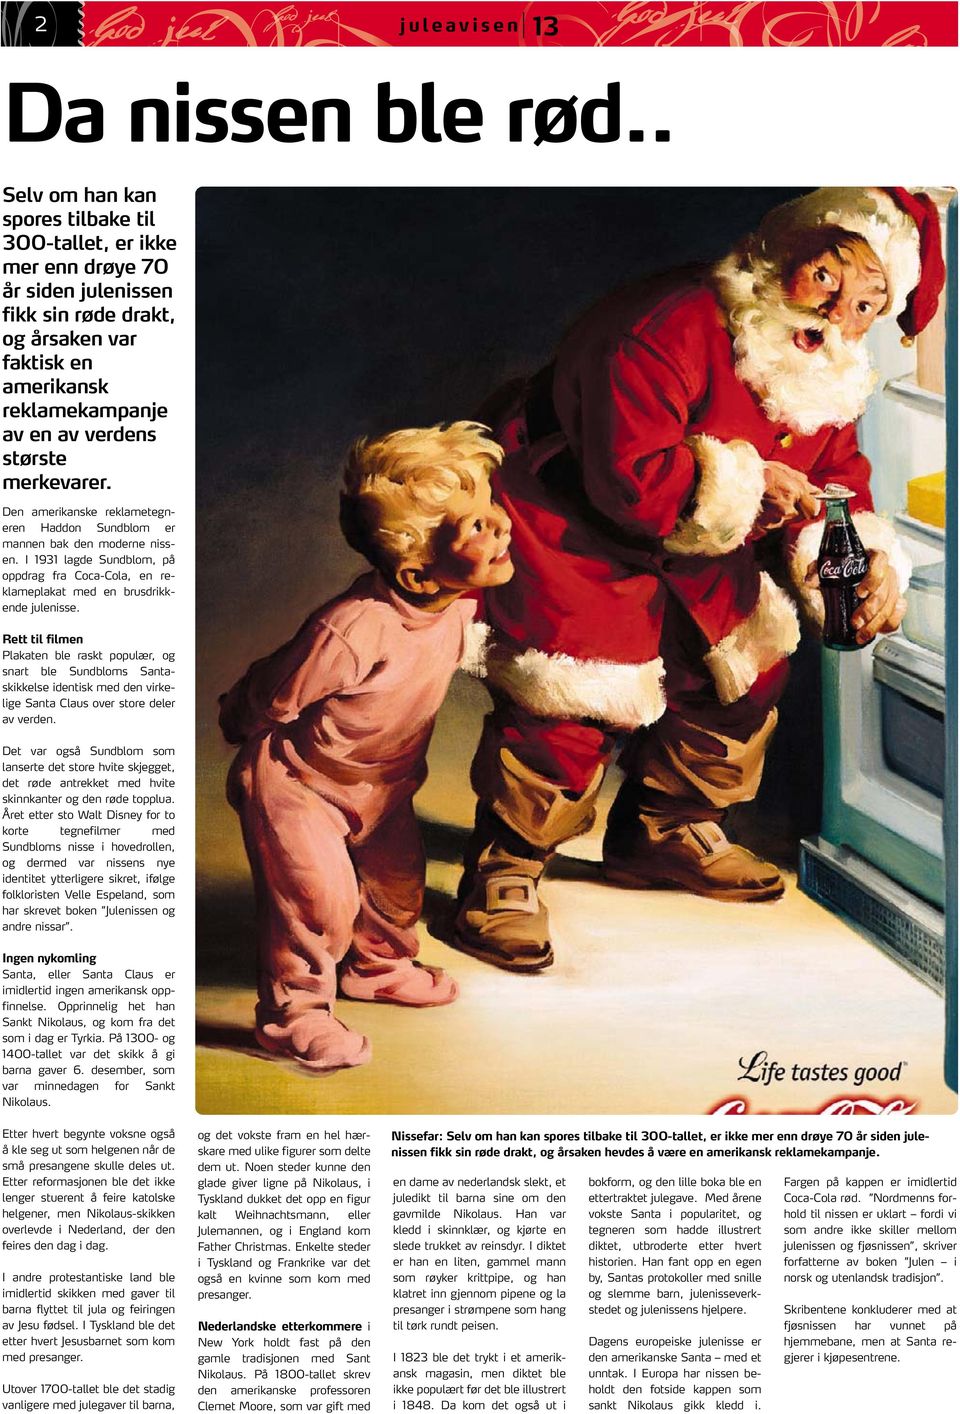 merkevarer. Den amerikanske reklametegneren Haddon Sundblom er mannen bak den moderne nissen. I 1931 lagde Sundblom, på oppdrag fra Coca-Cola, en reklameplakat med en brusdrikkende julenisse.